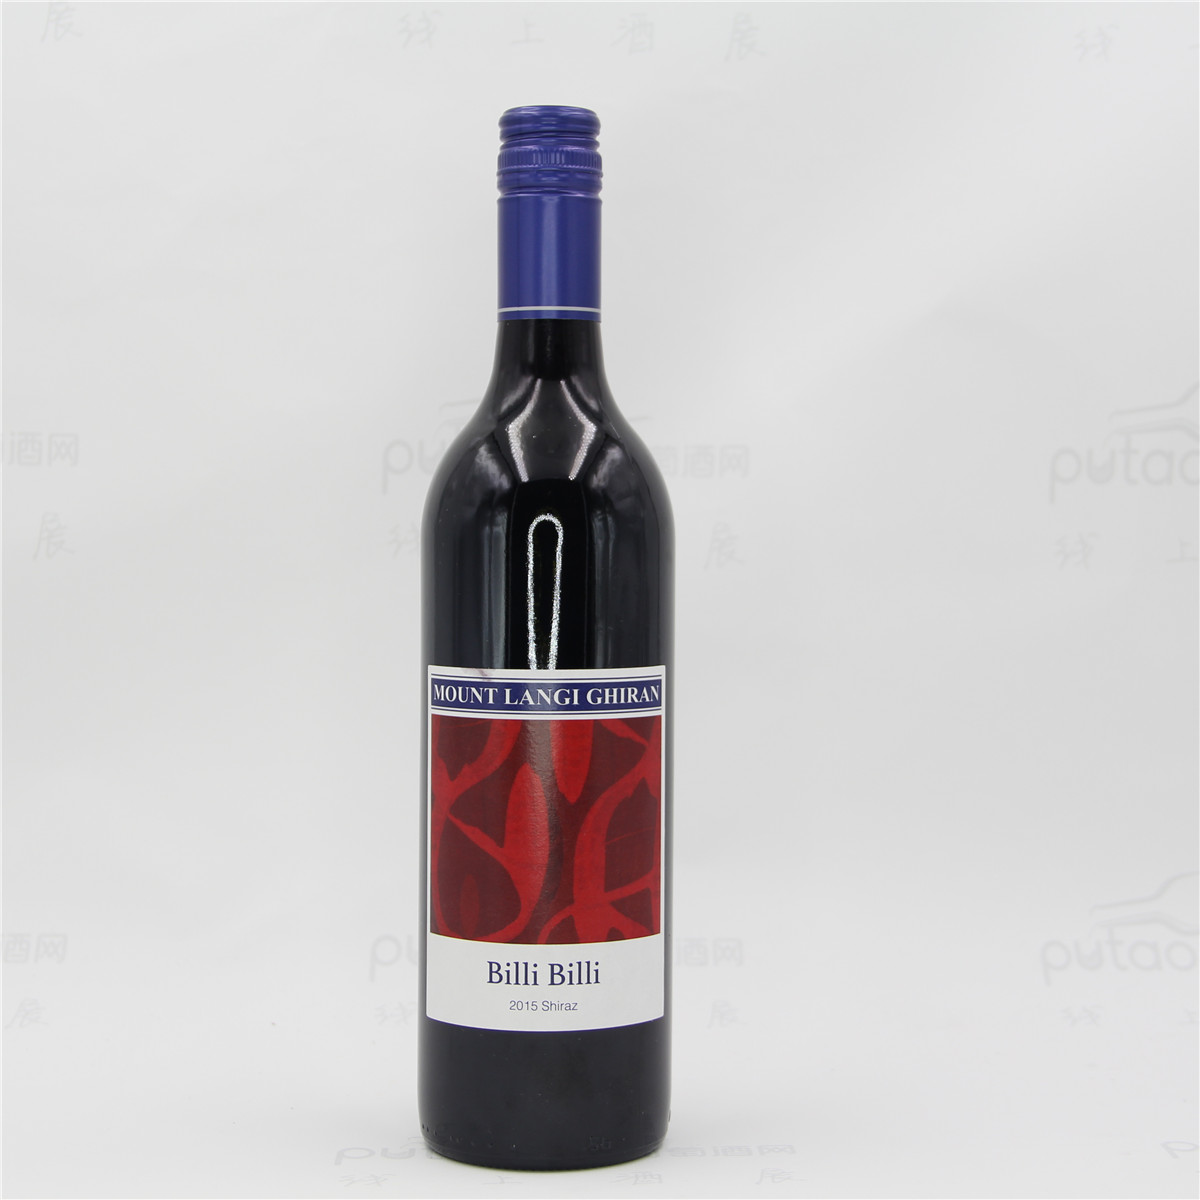  澳大利亚格兰屏产区朗节酒庄比利比利西拉双红五星酒庄干红葡萄酒 